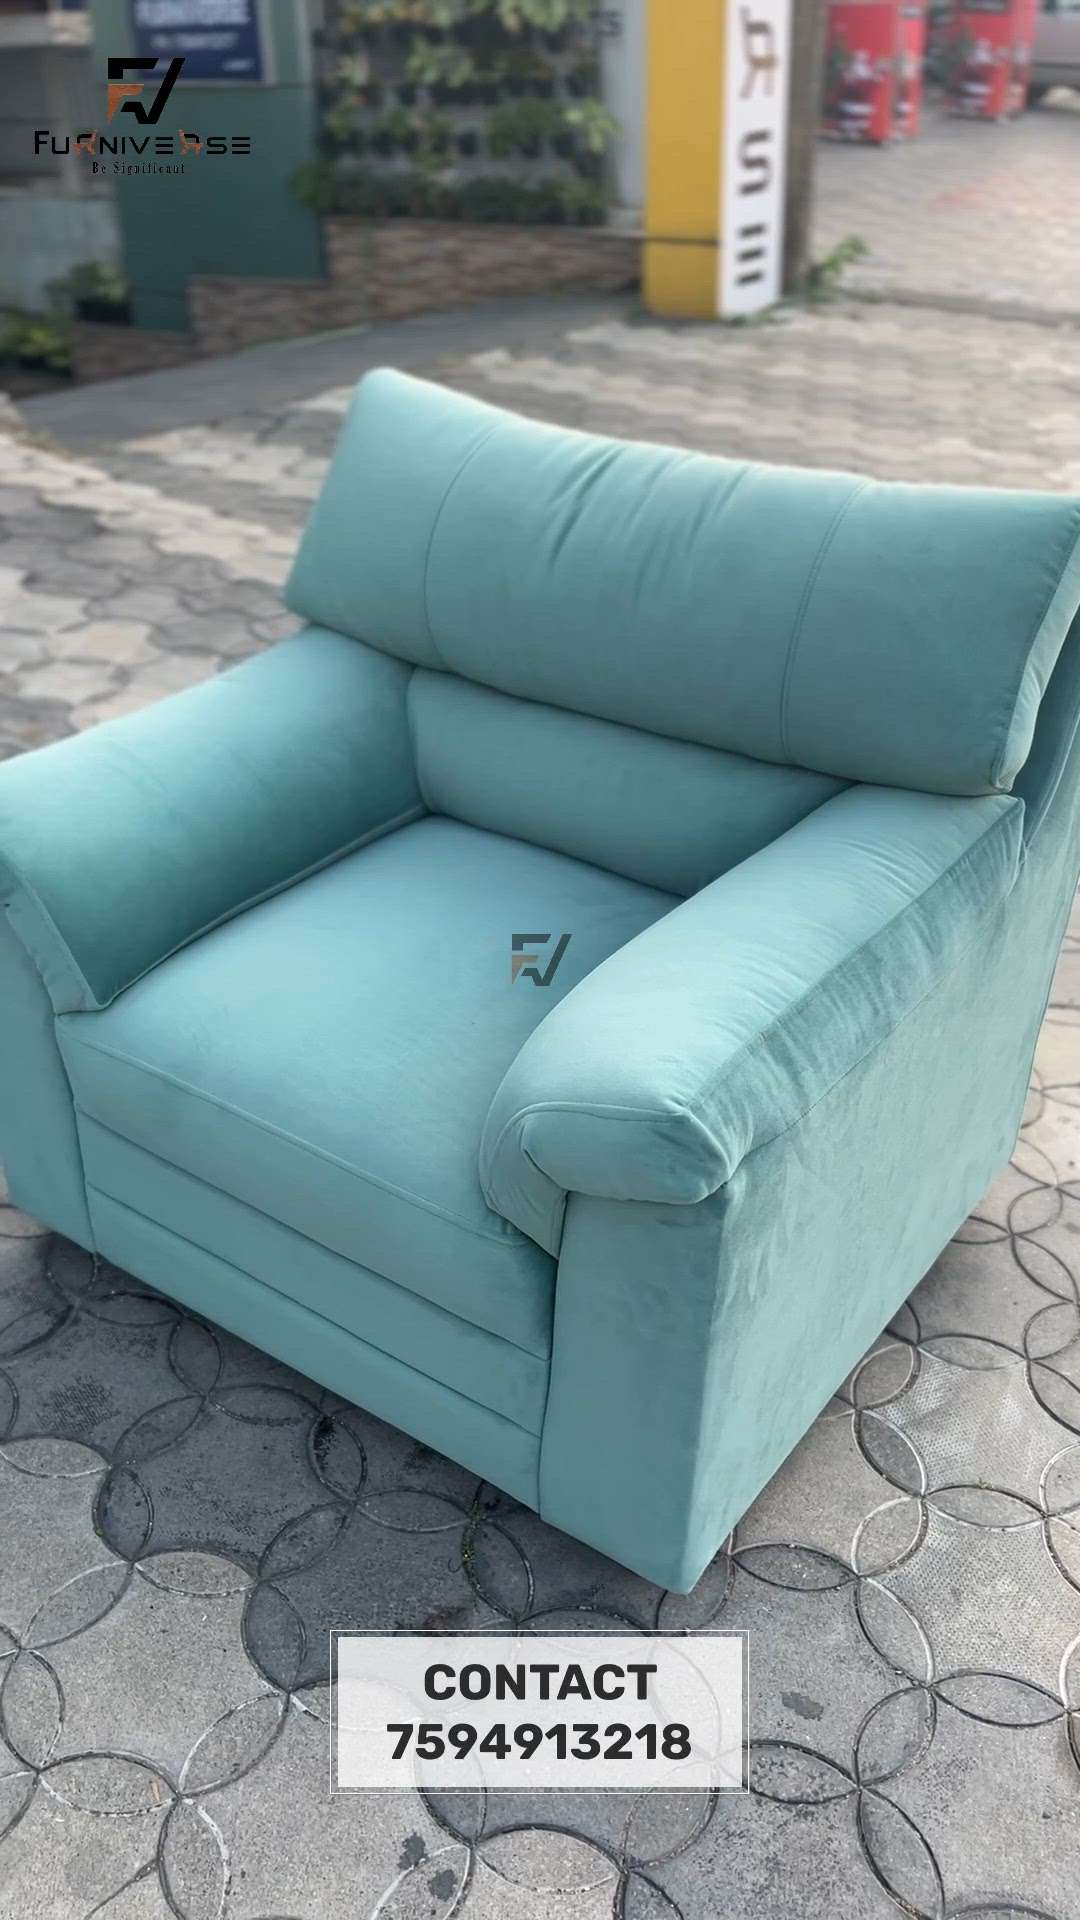 Premium Sofa
3+1+1 set
contact -7594913218
.
.
 #furniture  #furniversepalakkad  #manufacturer  #Sofas  #HomeDecor  #Furnishings